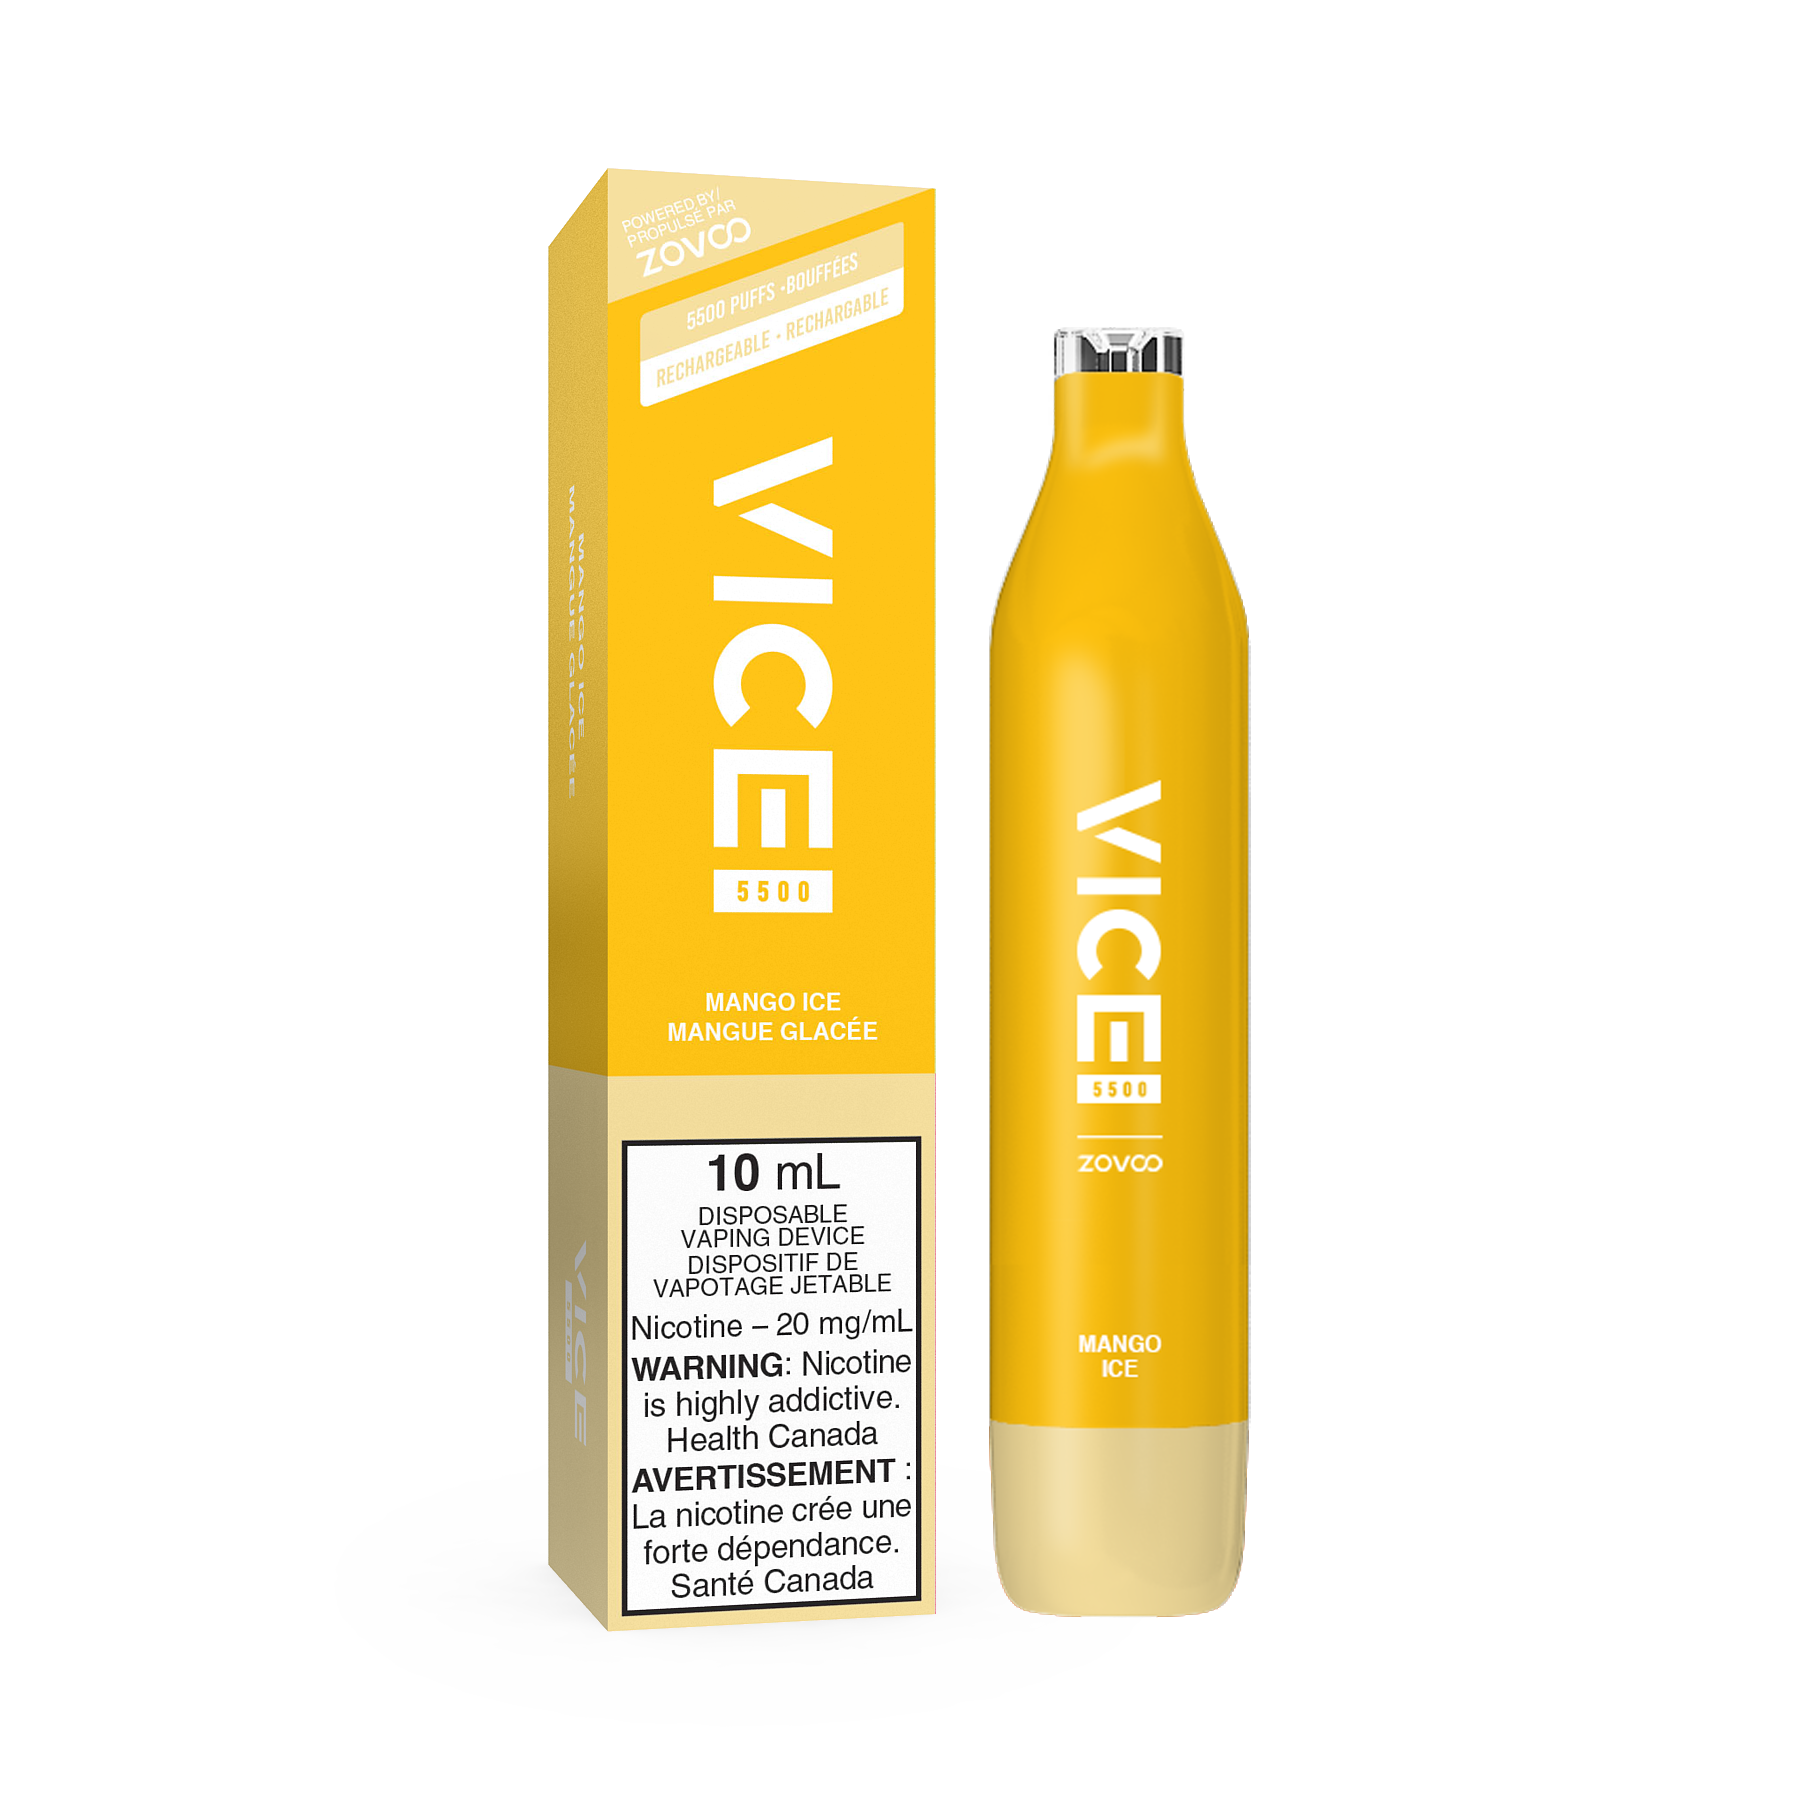 Mango Ice - VICE 5500 - 20mg - 6pc/box